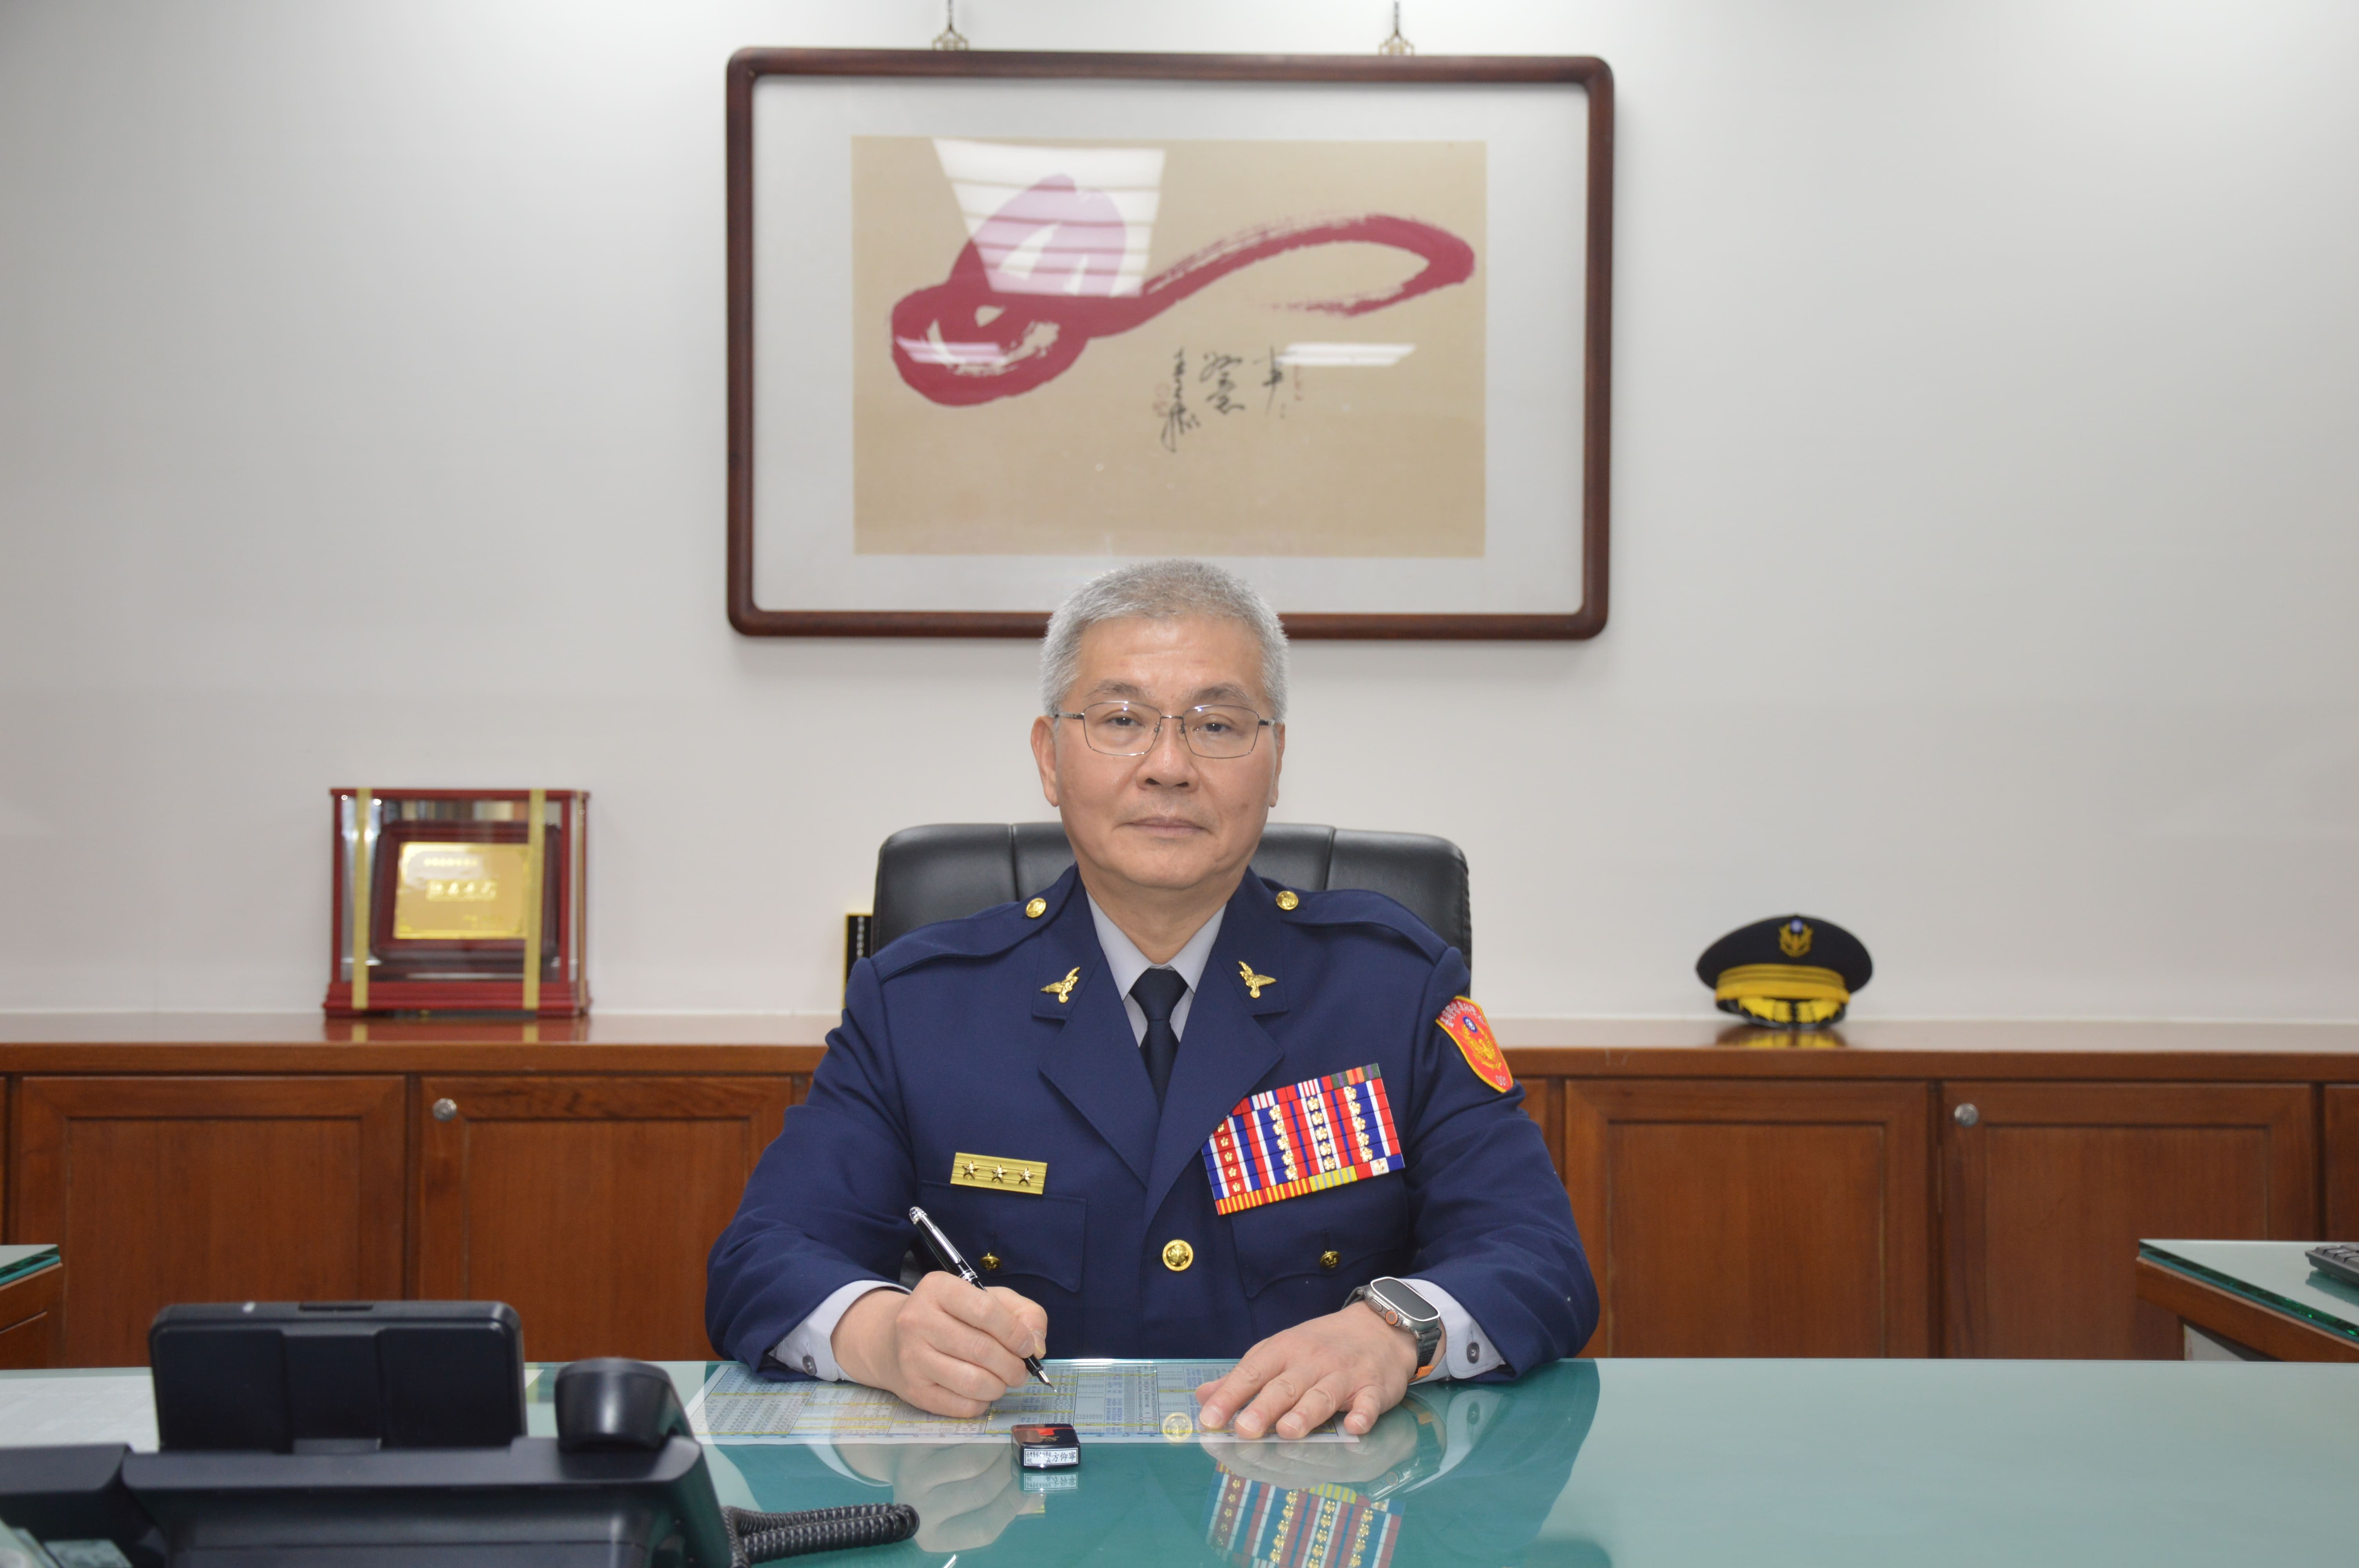 現任警專校長方仰寧將升任，遞補空缺的台北市警察局長一職。圖/取自警專網站